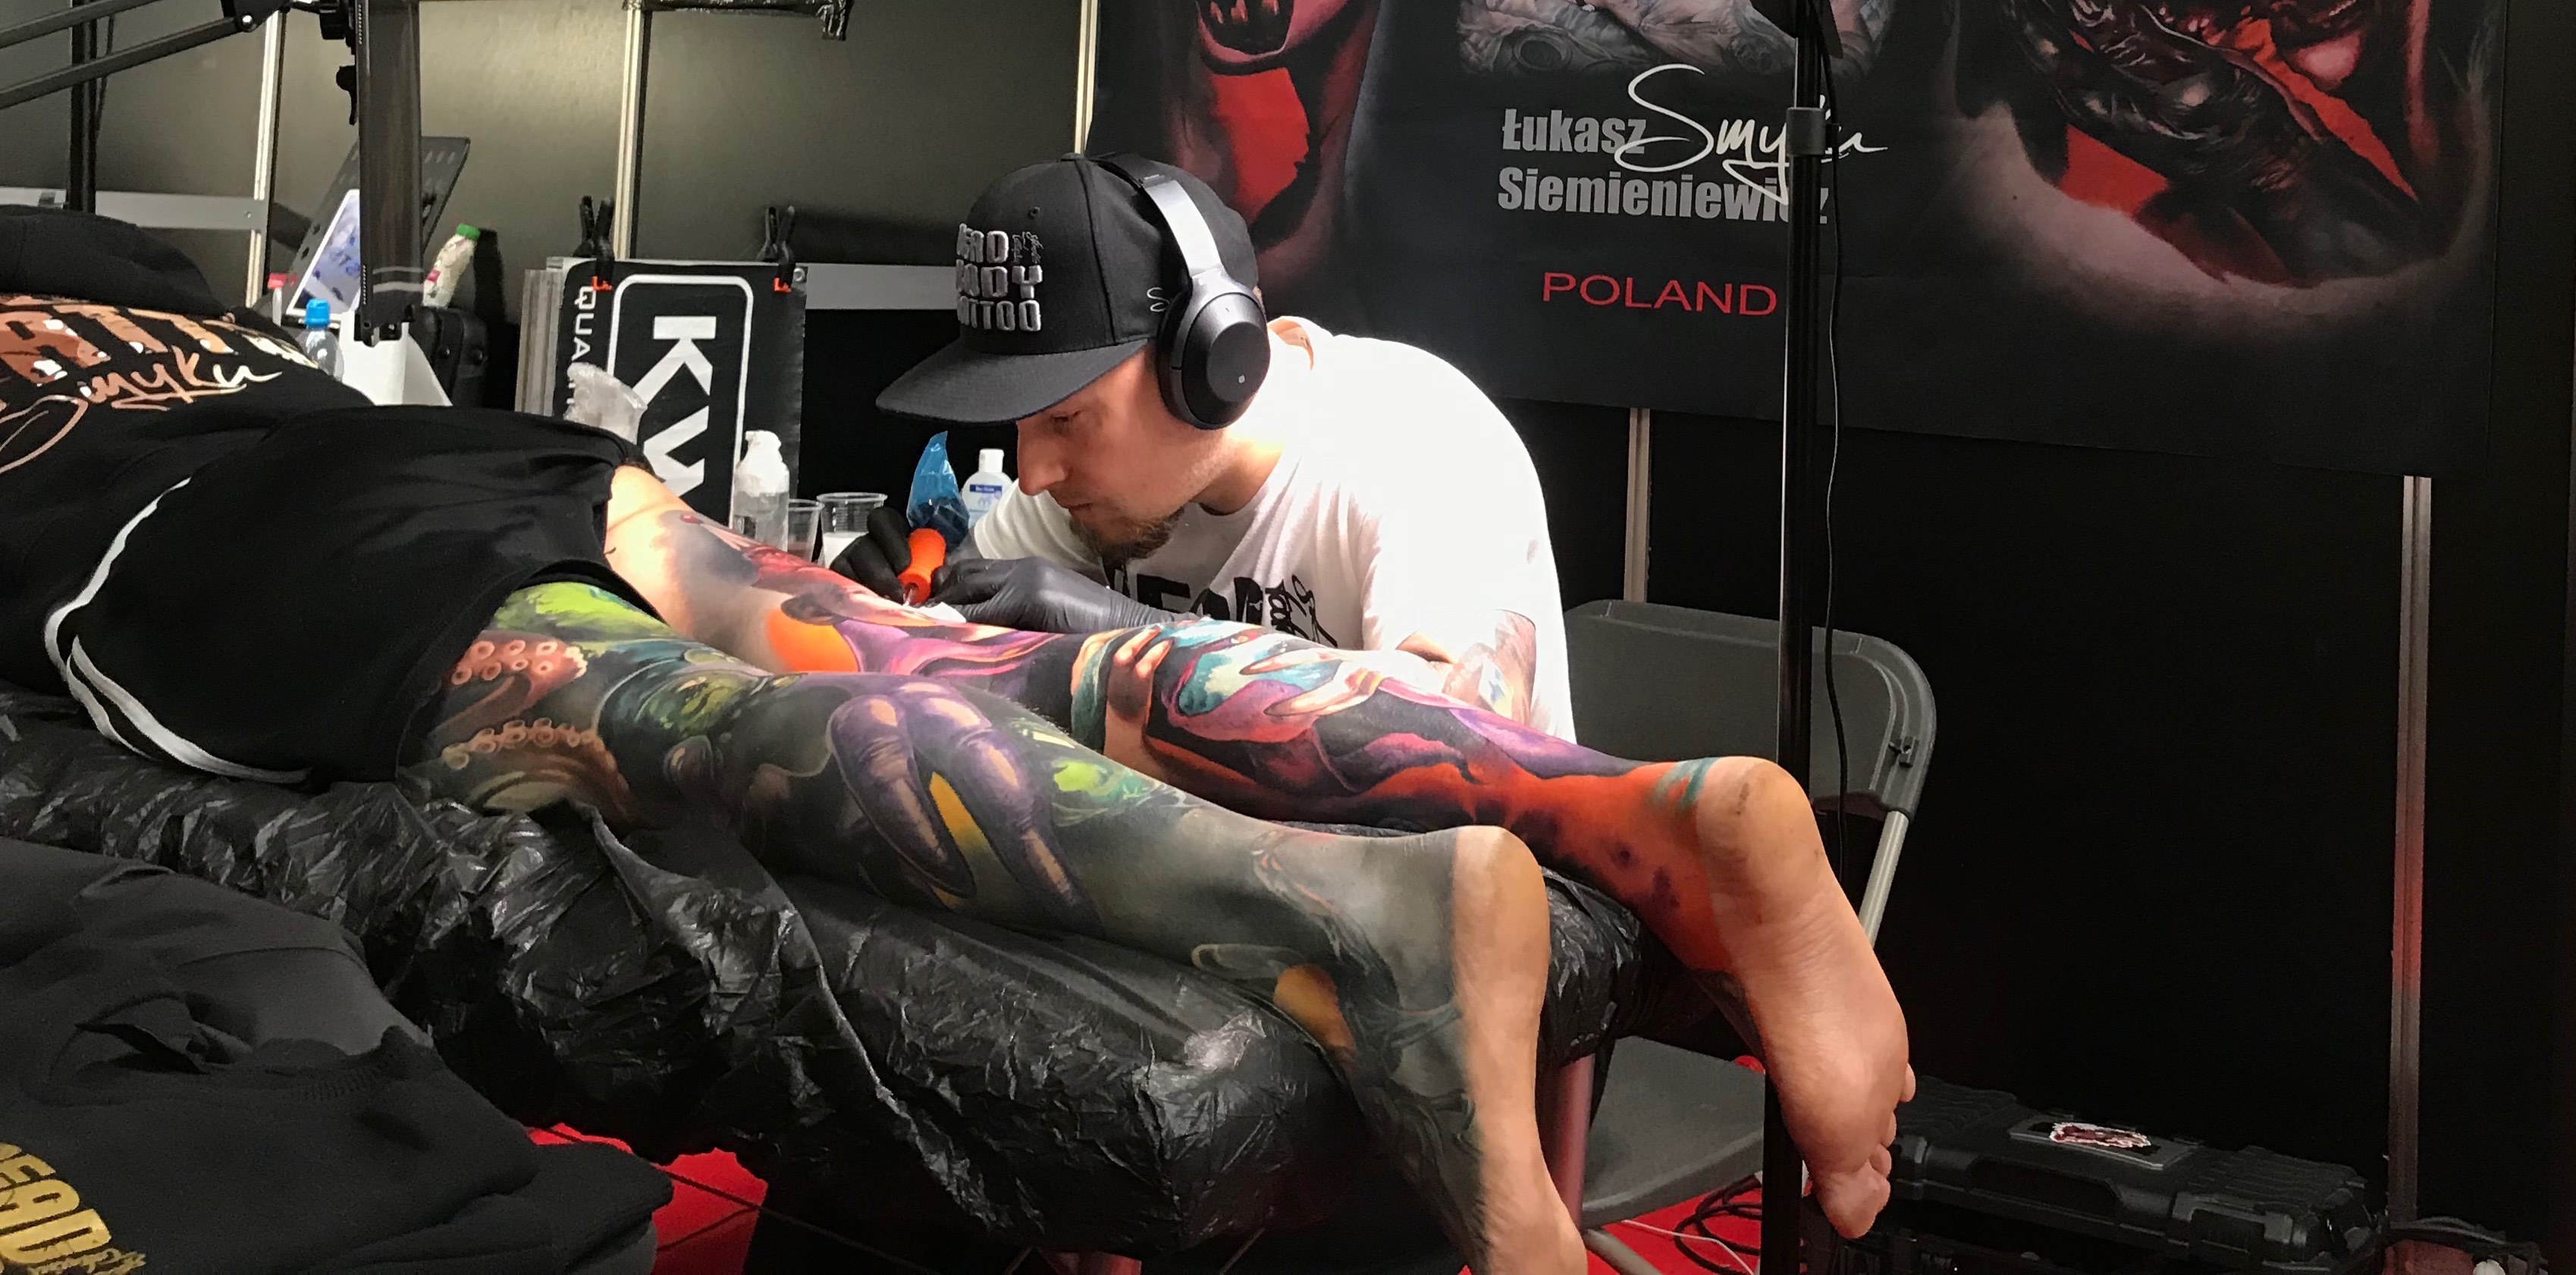 Un artiste tatoueur est en plein travail avec un client.